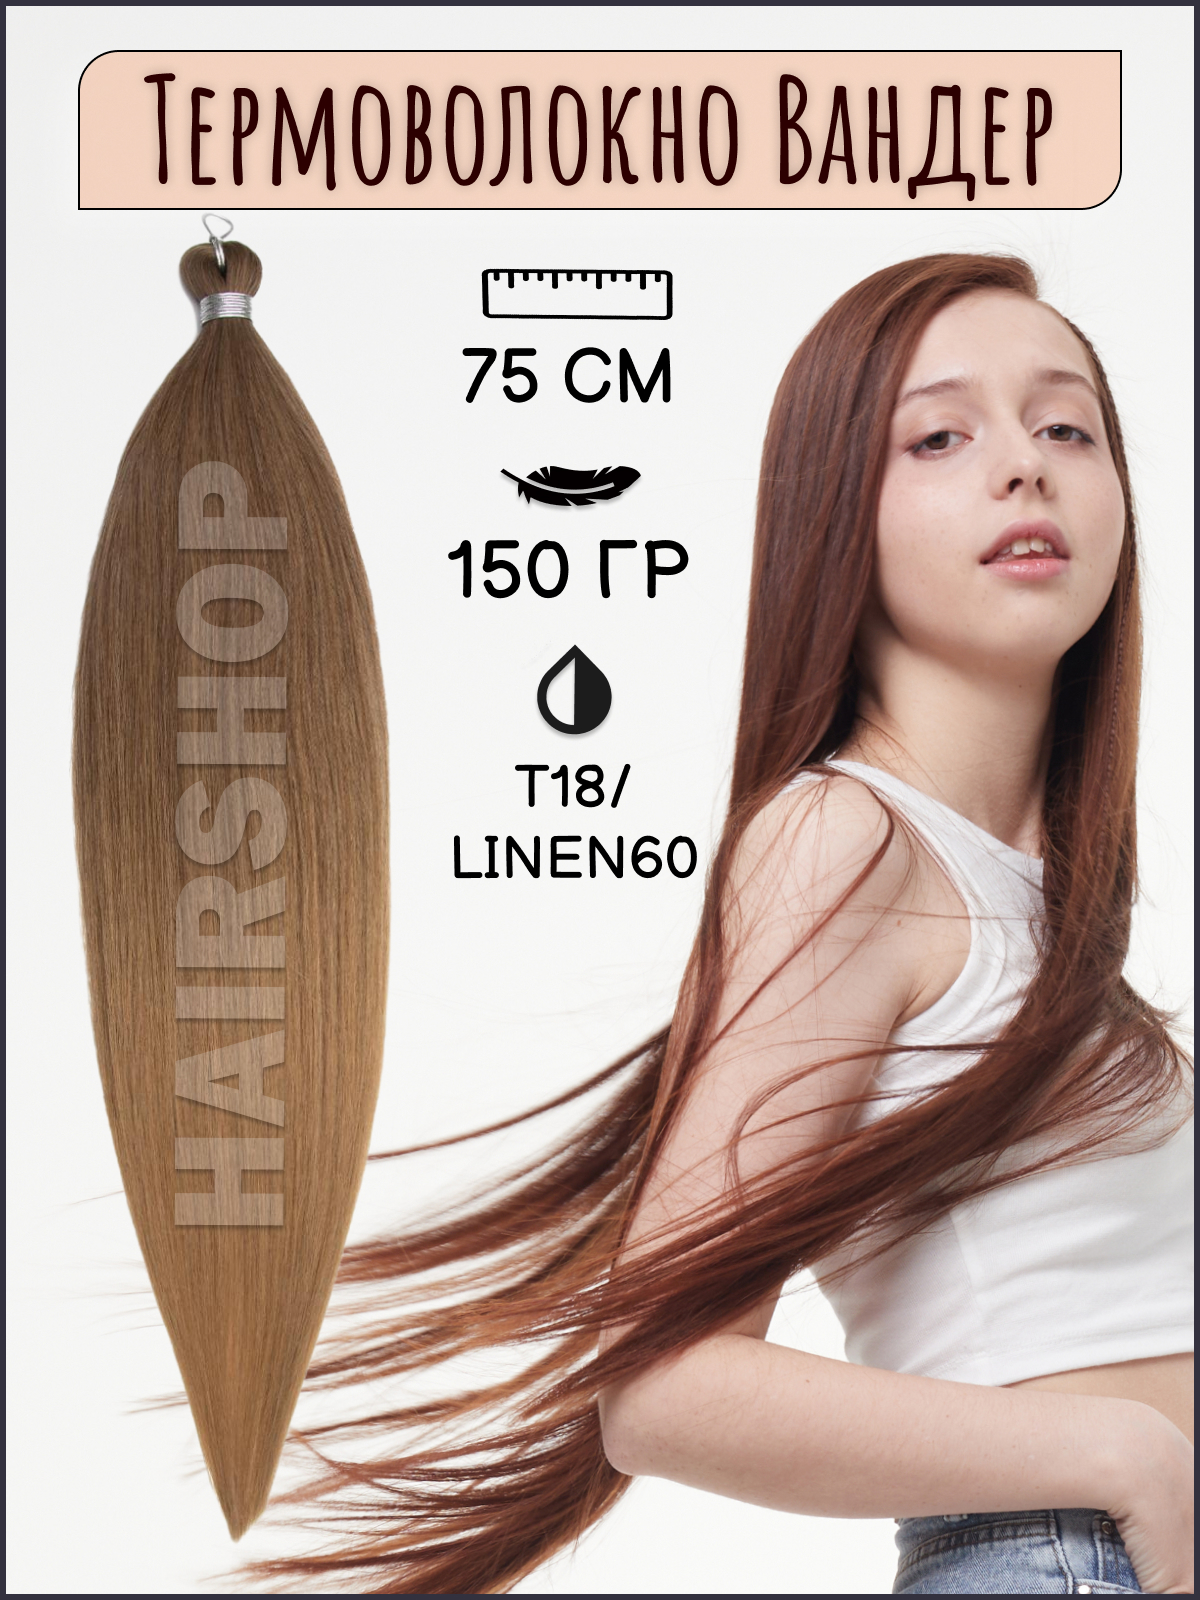 Термоволокно для наращивания Hairshop Вандер T18Linen60 150г 150см